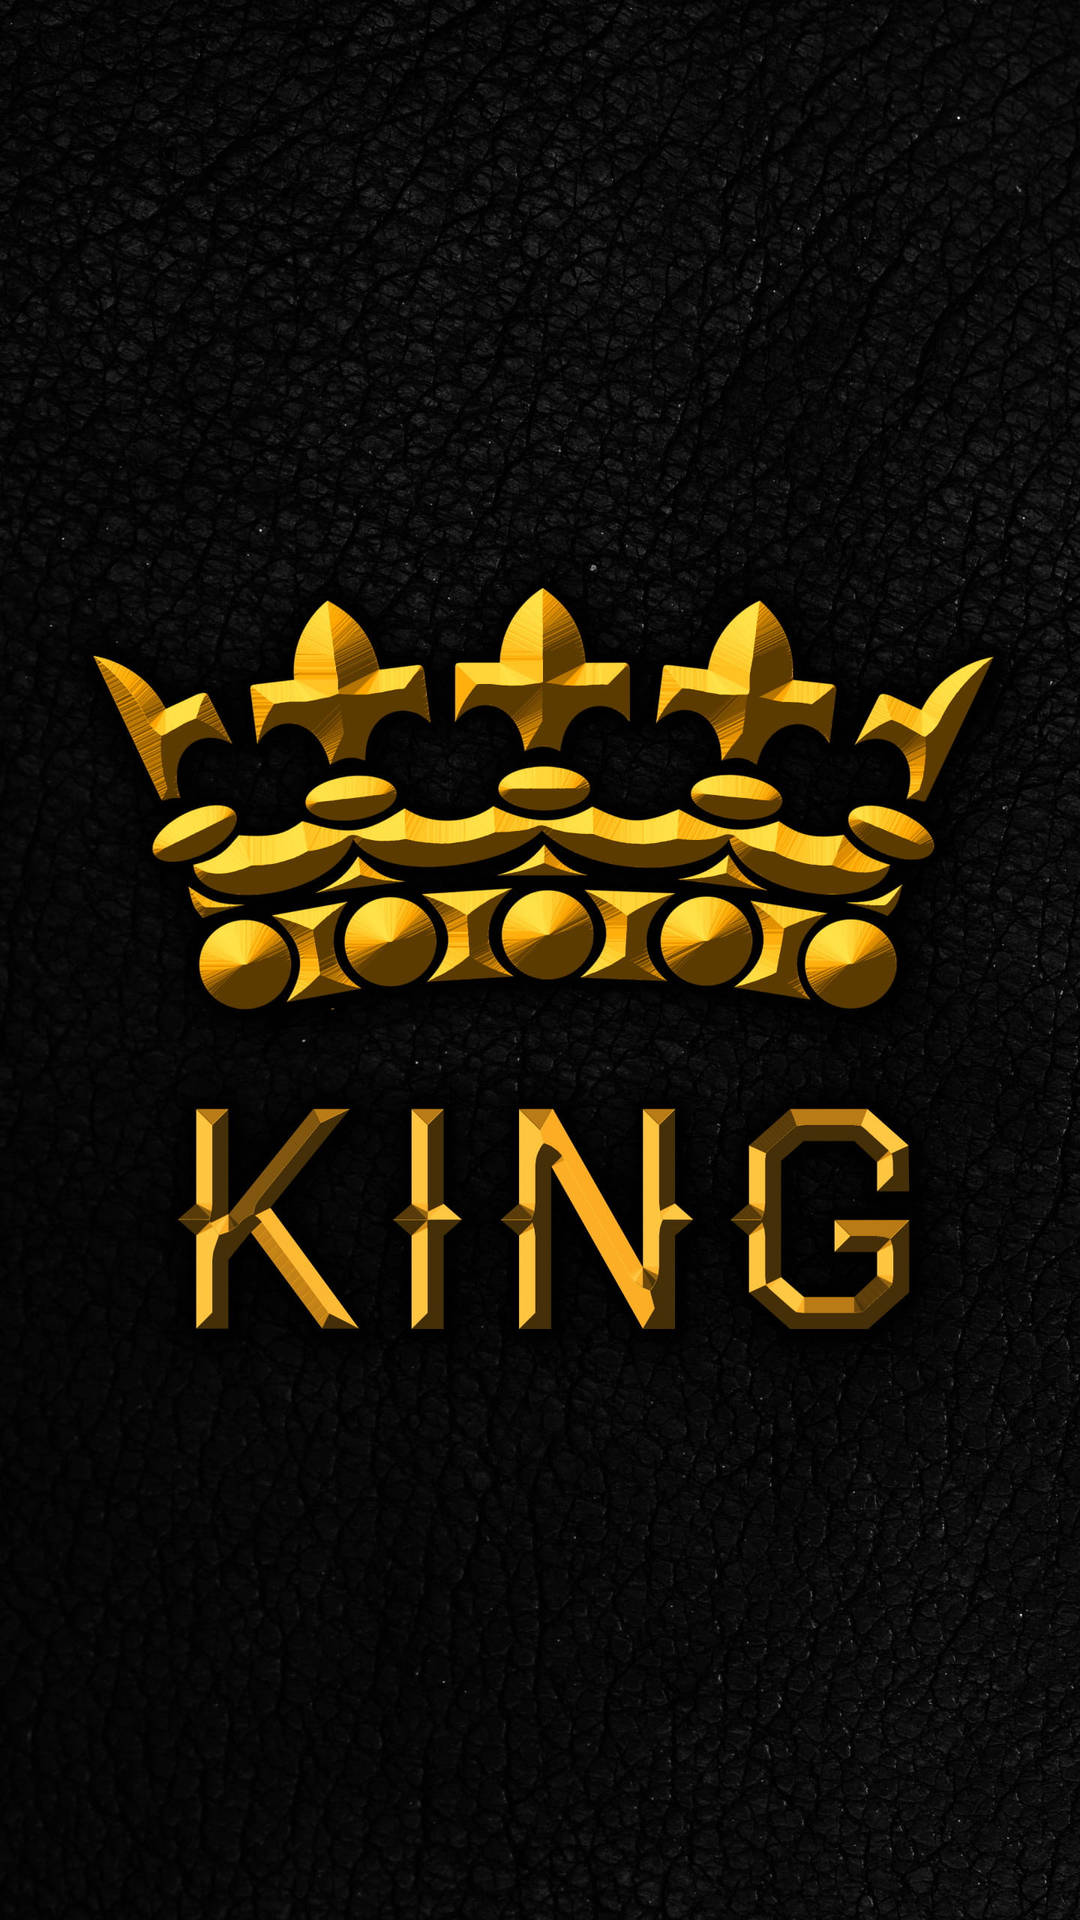 Single King - anime king Wallpaper Download